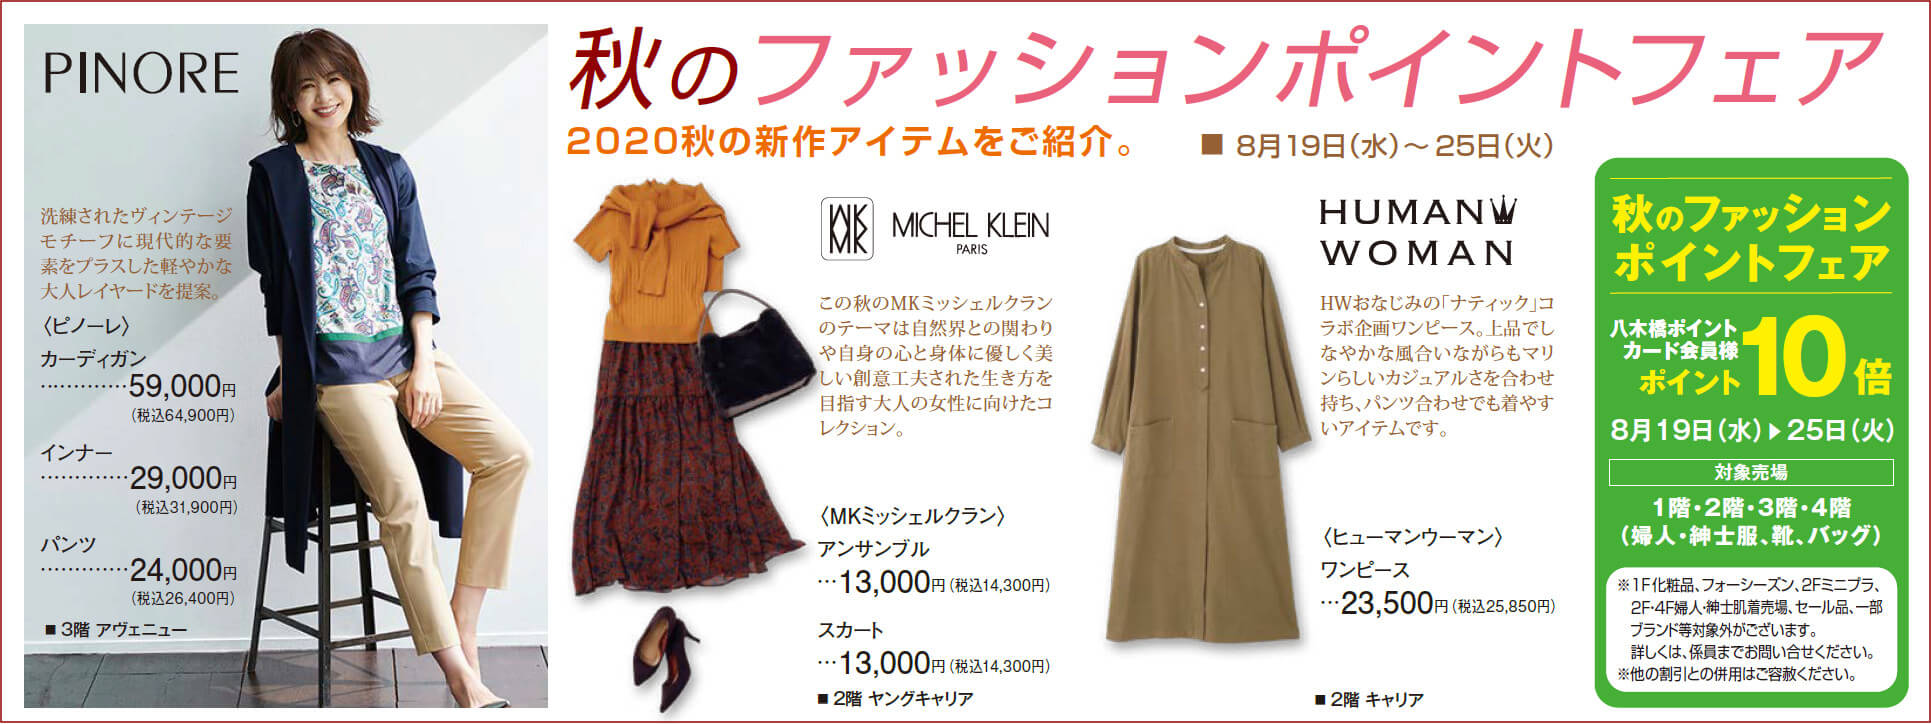 秋のファッションポイントフェア イベント情報 八木橋百貨店